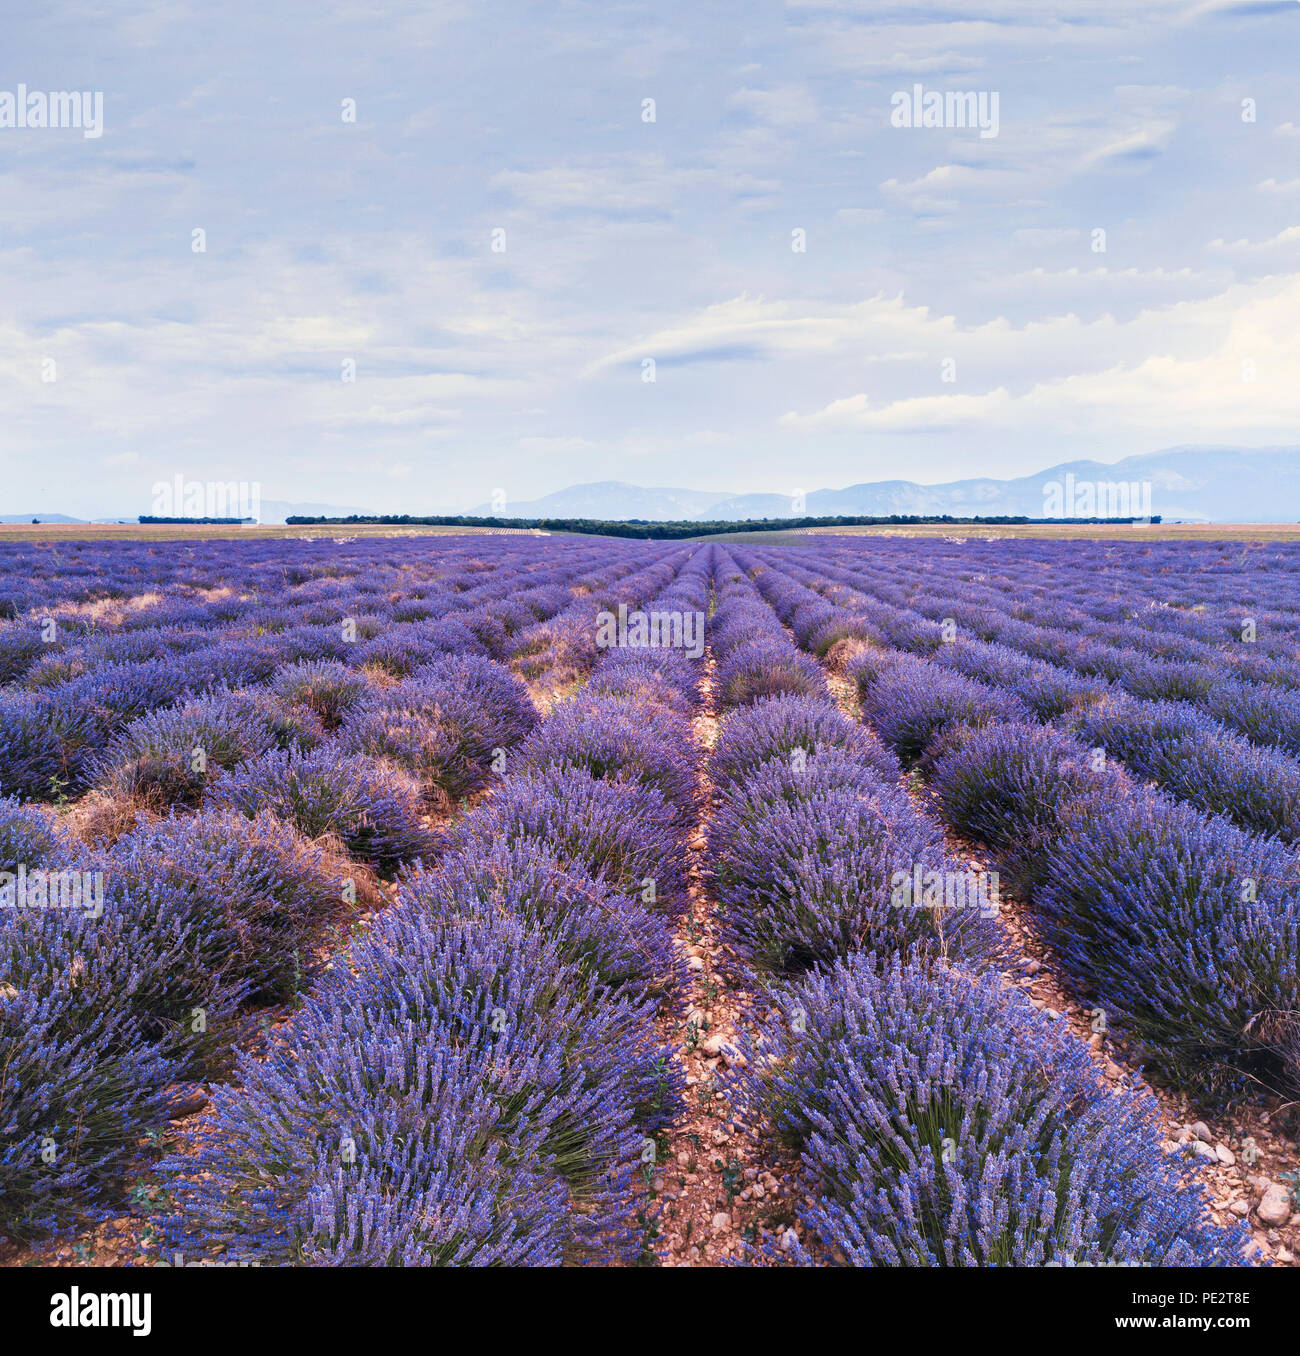 Beau paysage de la nature, champ de lavande en fleurs en Provence, France Banque D'Images